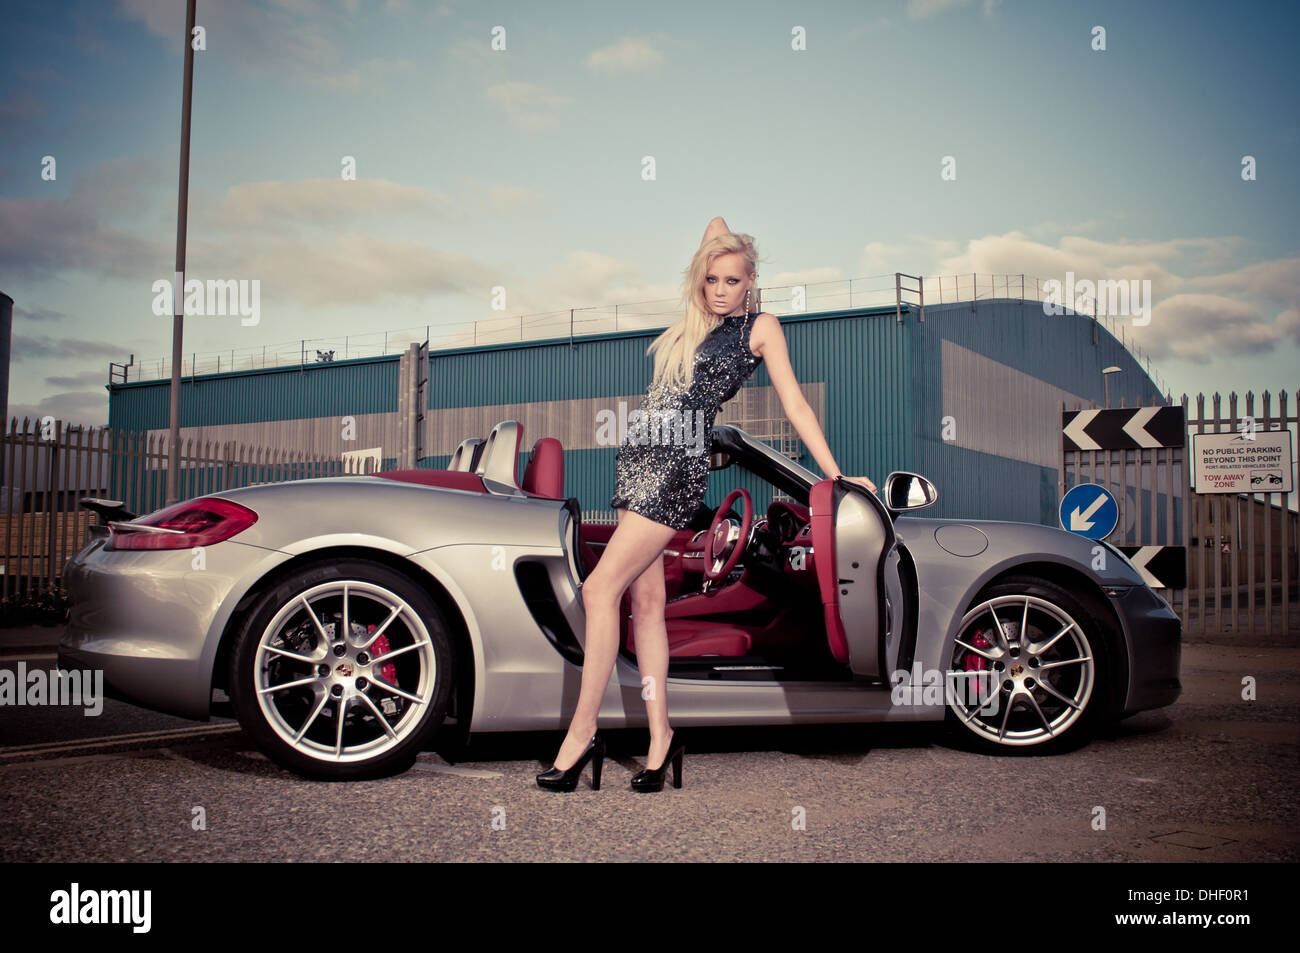 Junge blonde Modell in engen Kleid mit Porshe Supersportwagen Stockfoto